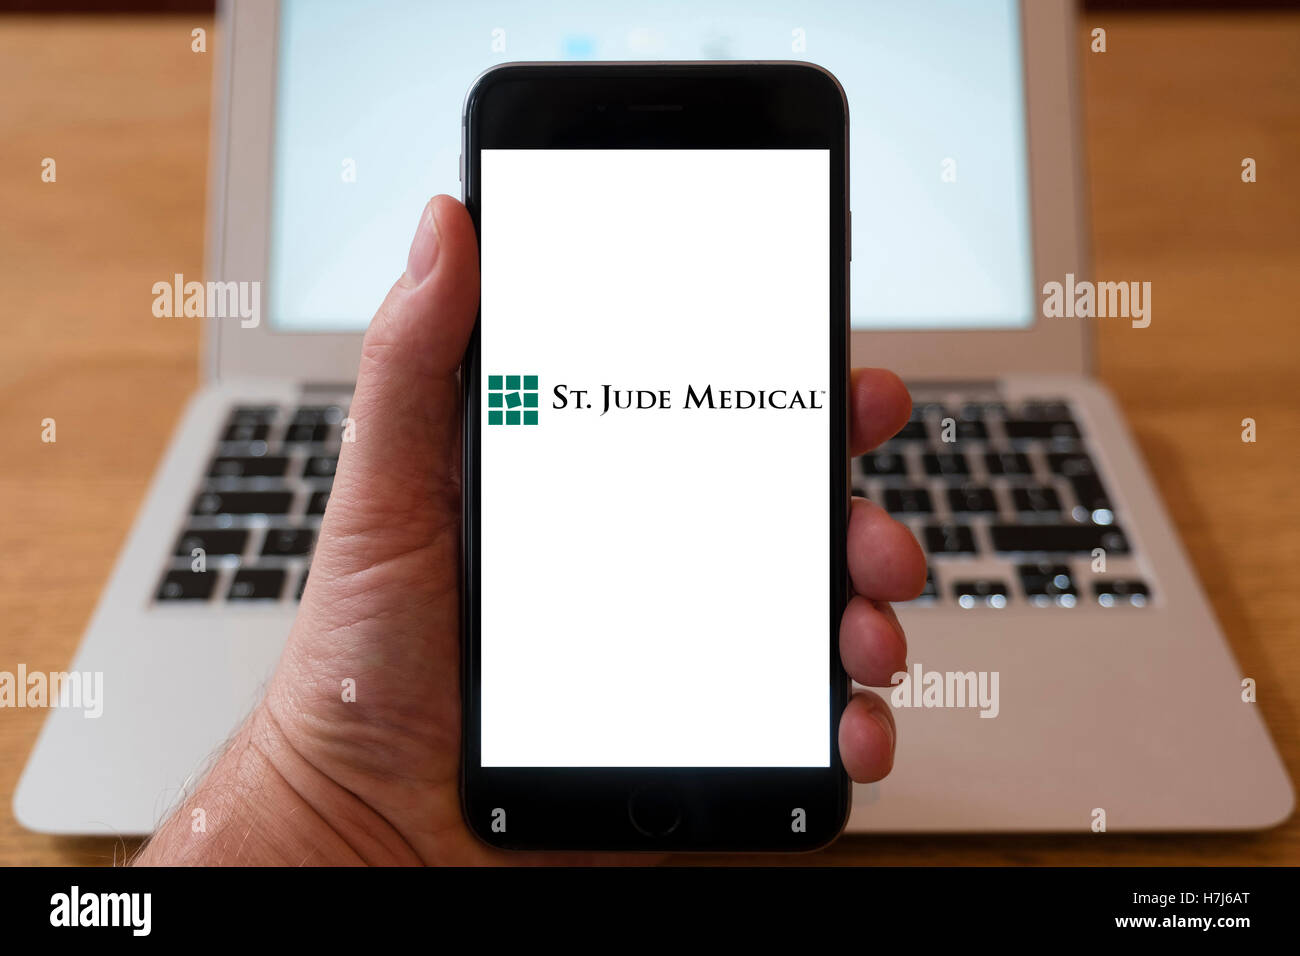 Utilizando el iPhone teléfono inteligente para mostrar el logotipo de St Jude Medical, , una compañía global de dispositivos médicos americanos Foto de stock